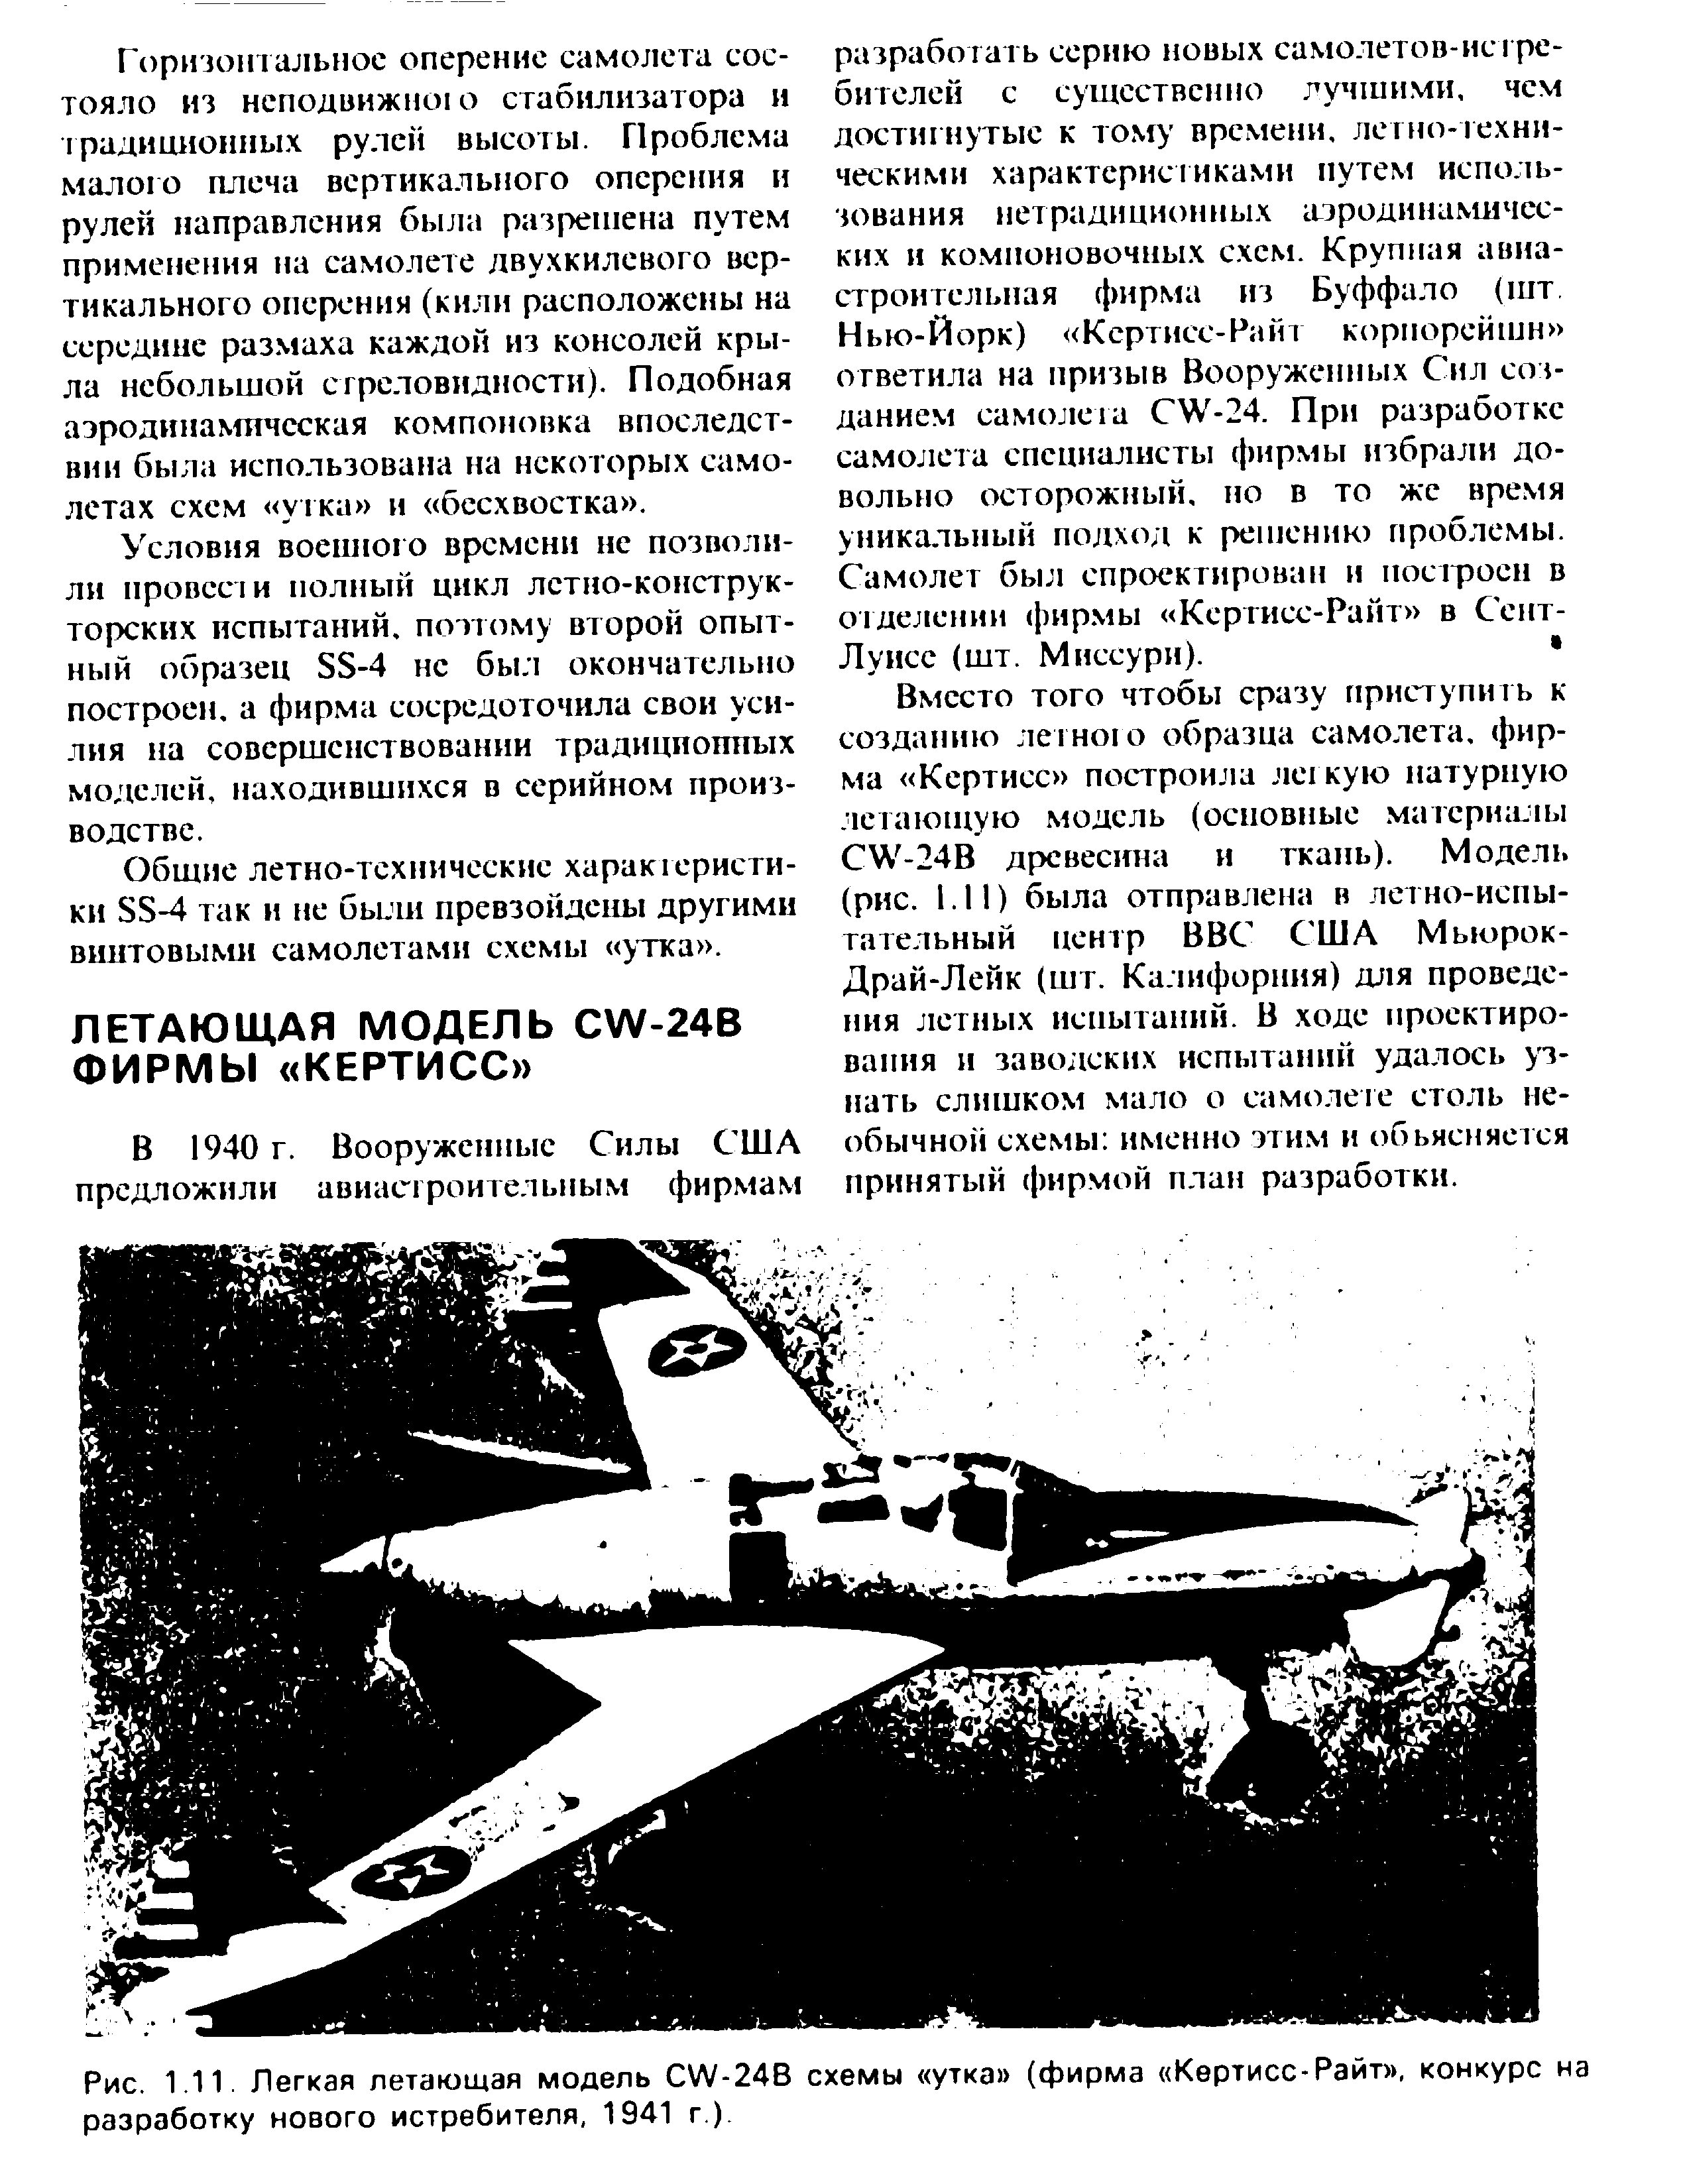 Рис. 1.11. Легкая летающая модель W-24B <a href="/info/740103">схемы утка</a> (фирма Кертисс-Райт , конкурс на разработку нового истребителя, 1941 г.).
